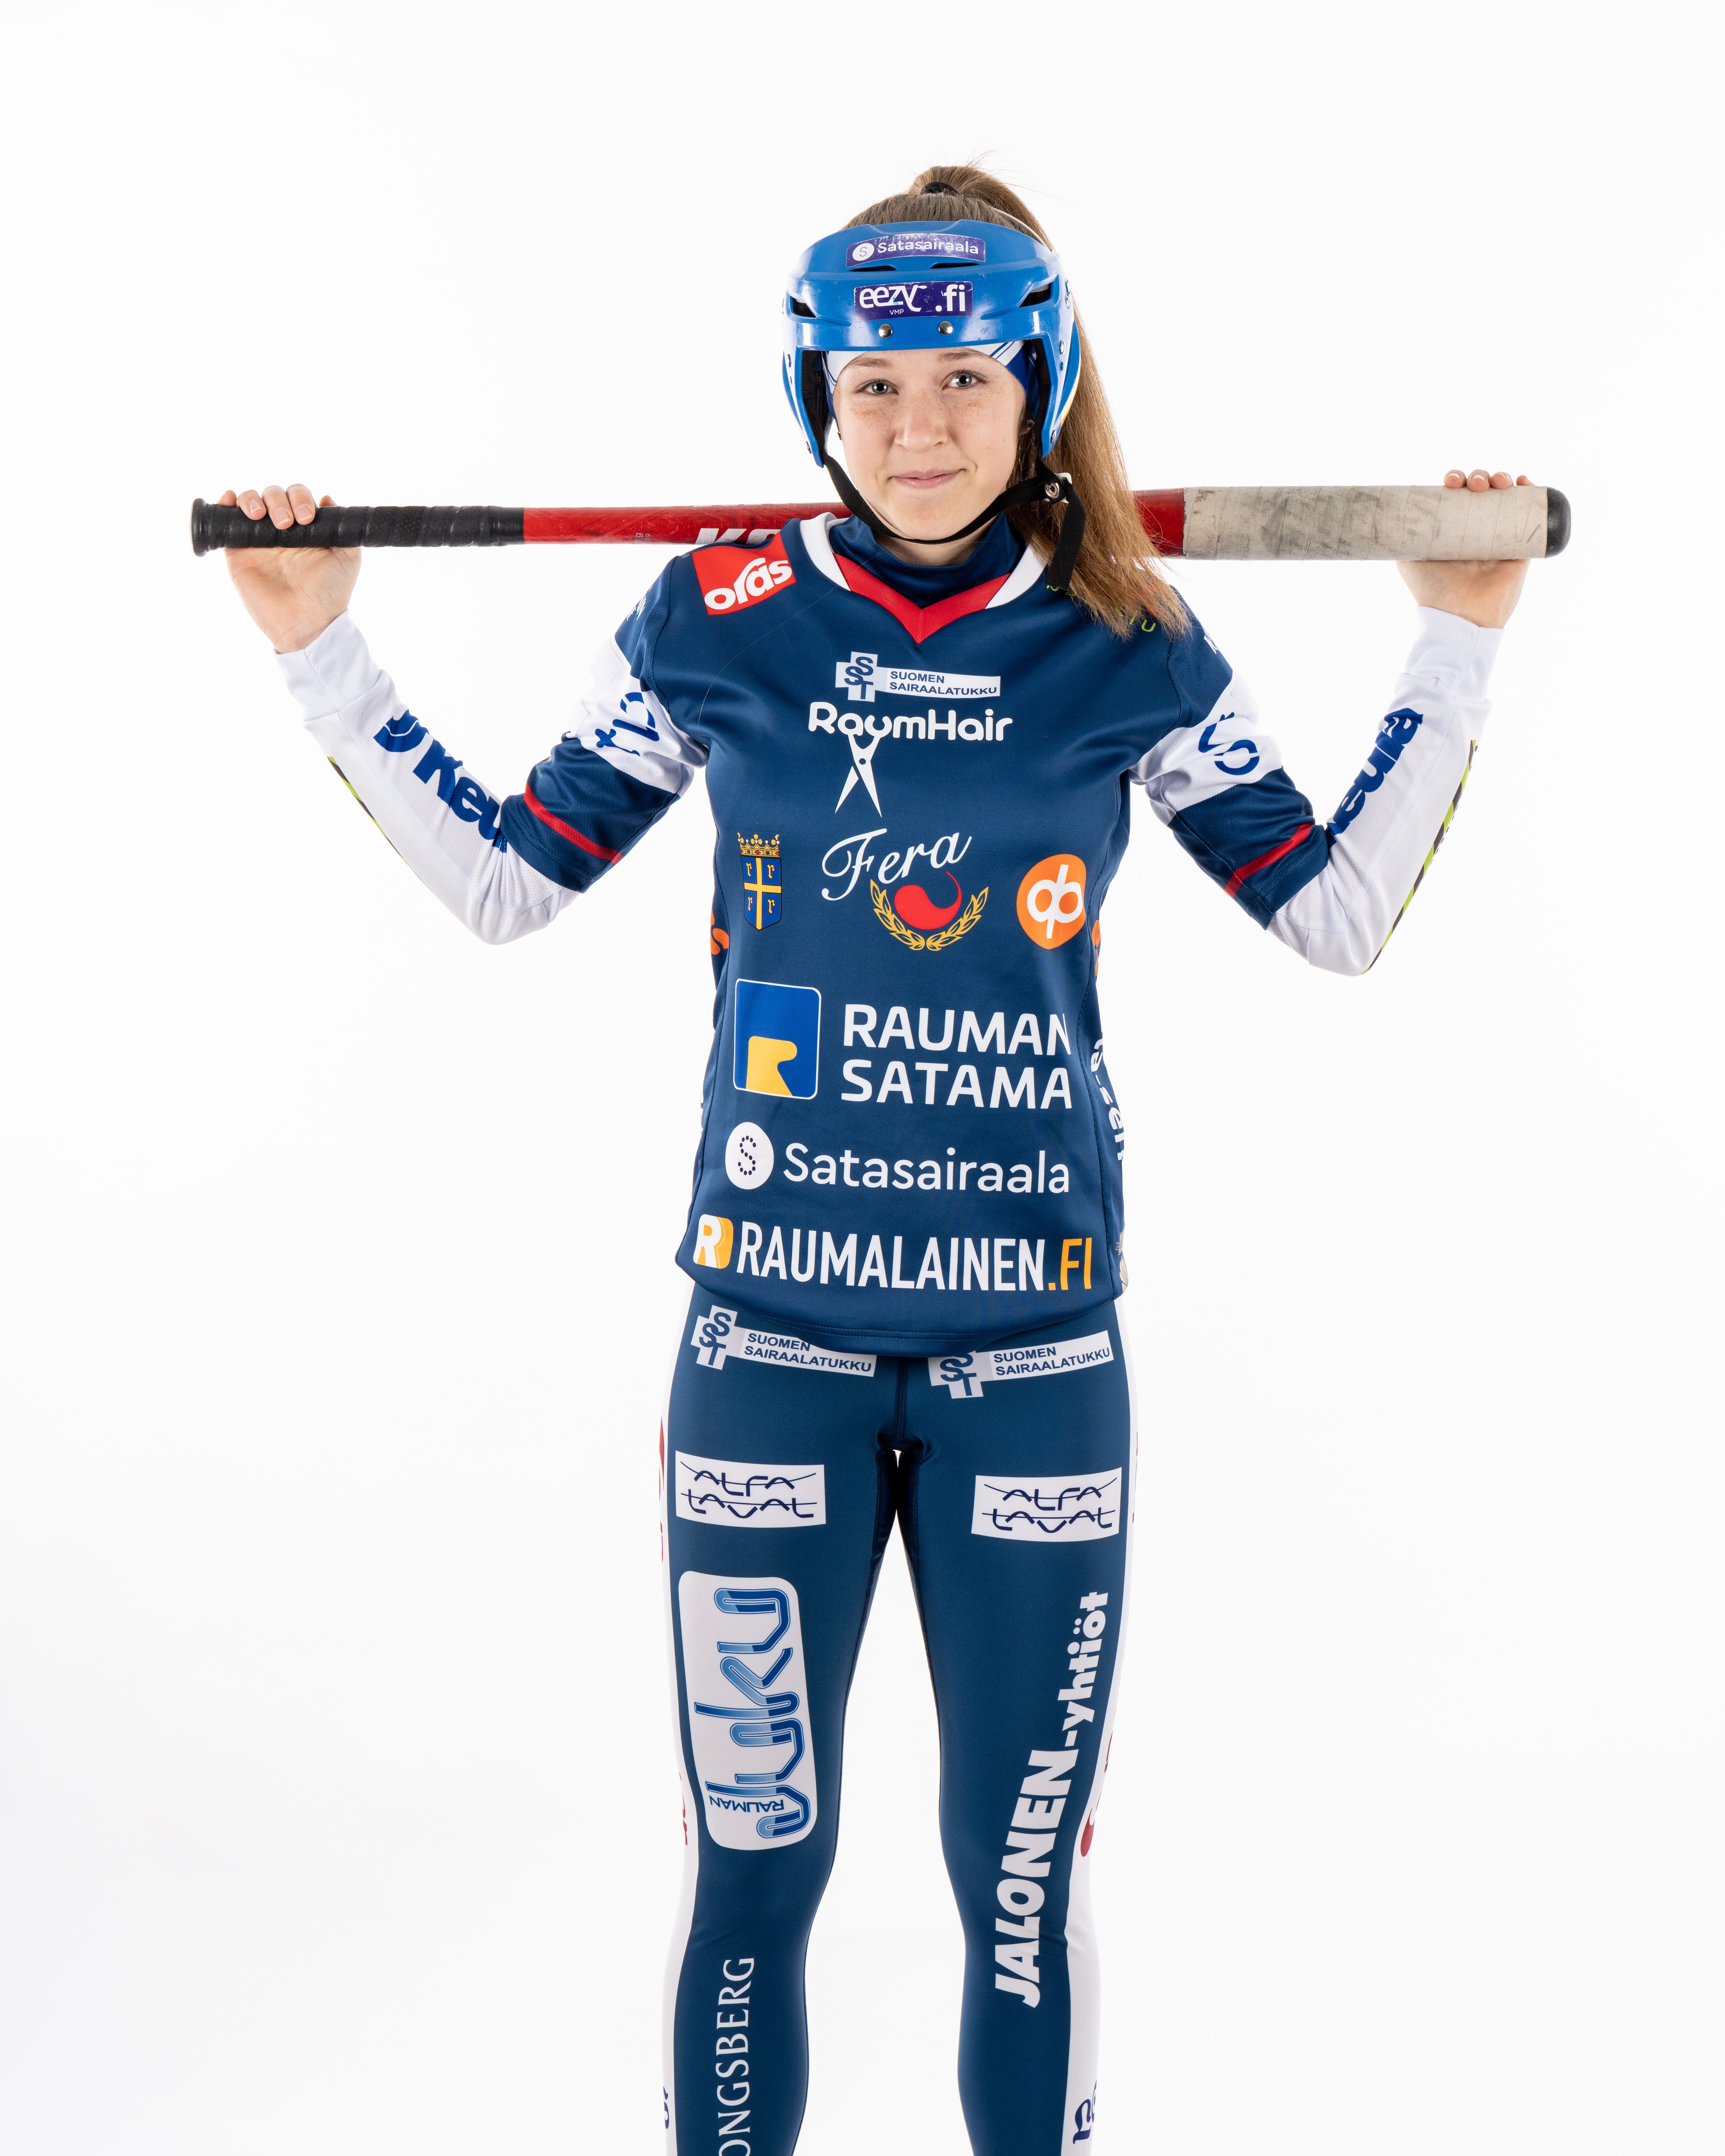 Alina Rosendahl